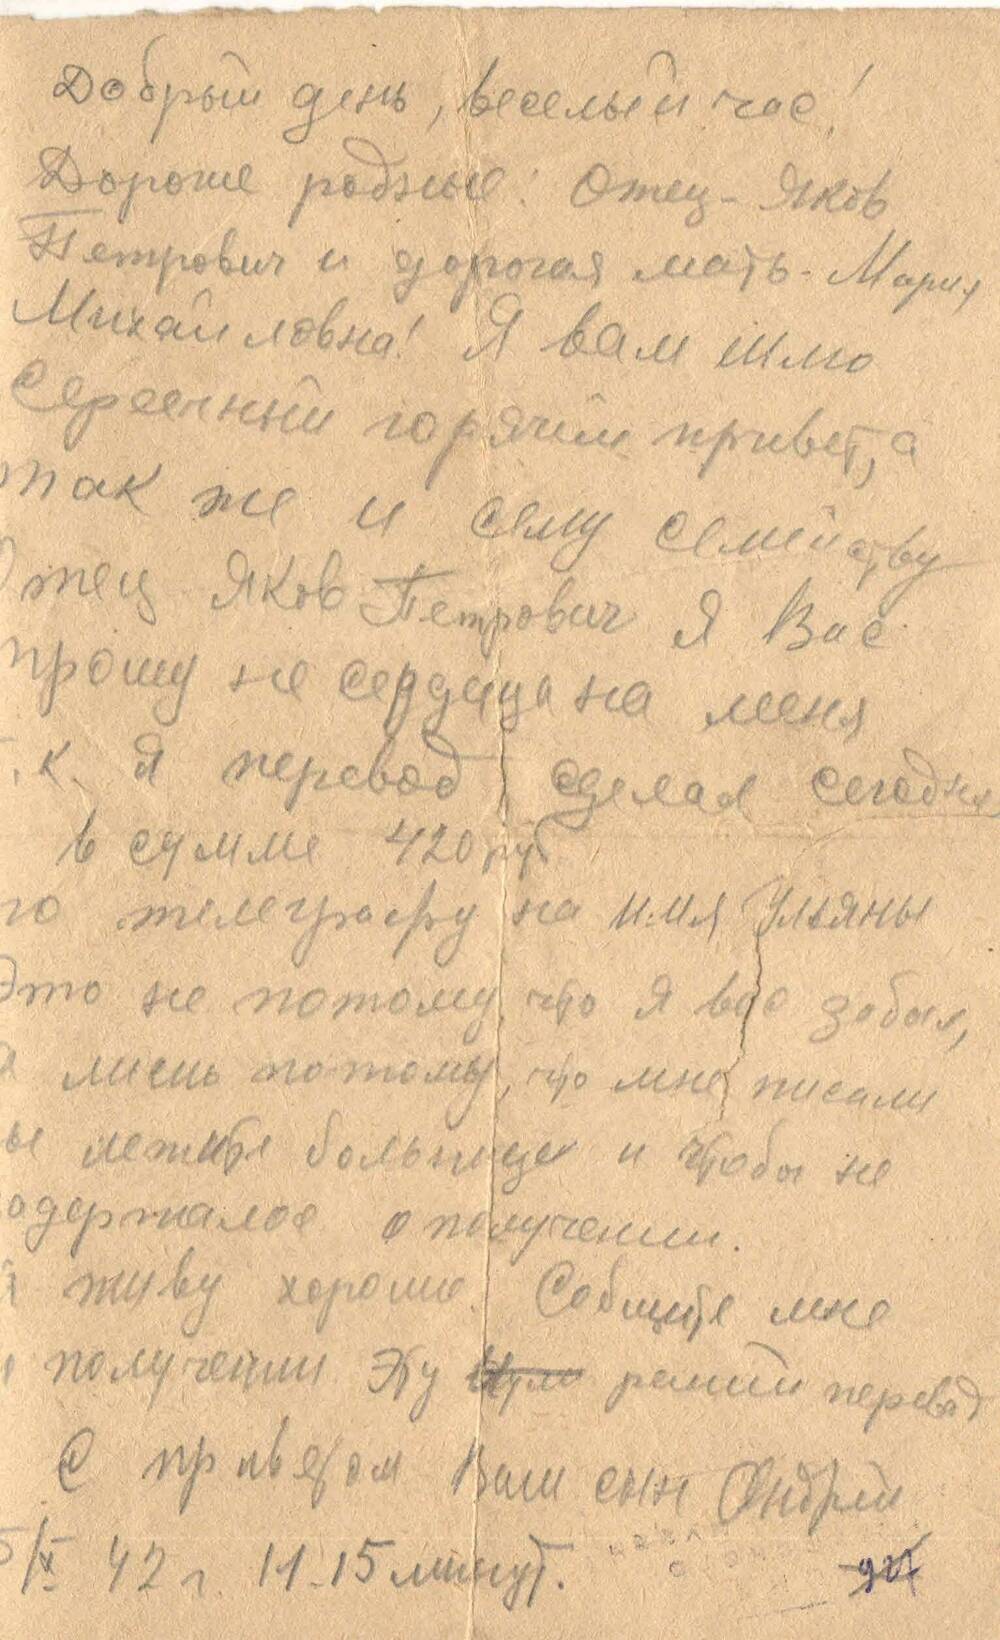 Фронтовое письмо родителям от сына Андрея от 05.10.1942 года